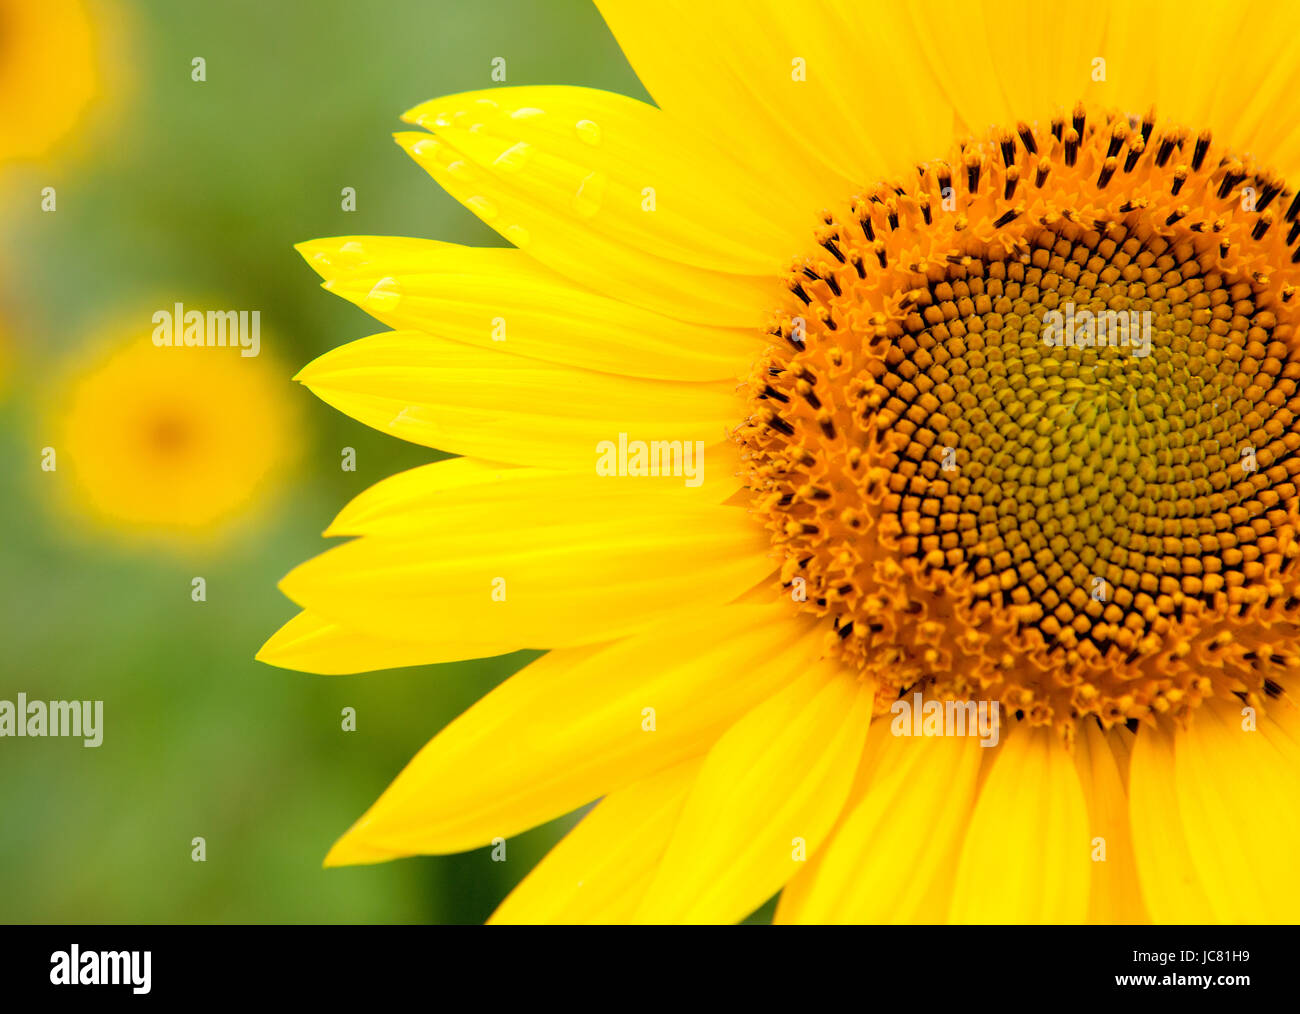 Schöne Sonnenblumen mit leuchtend gelb mit mehr Sonnenblumen des Hintergrunds Stockfoto